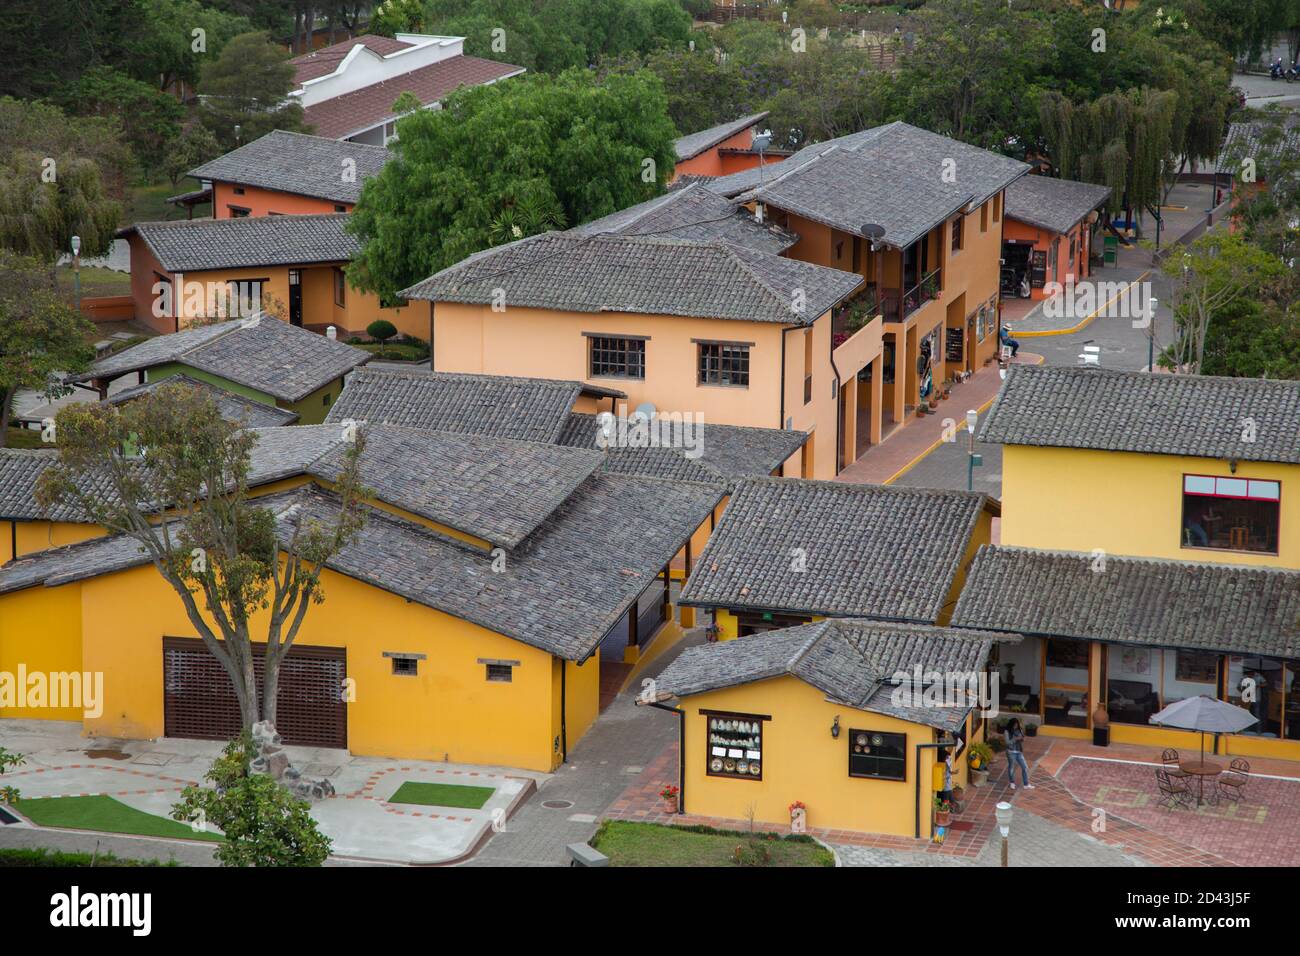 villaggio con diverse piccole case gialle e rosa con tetto di tegole nere, alberi tra le case Foto Stock